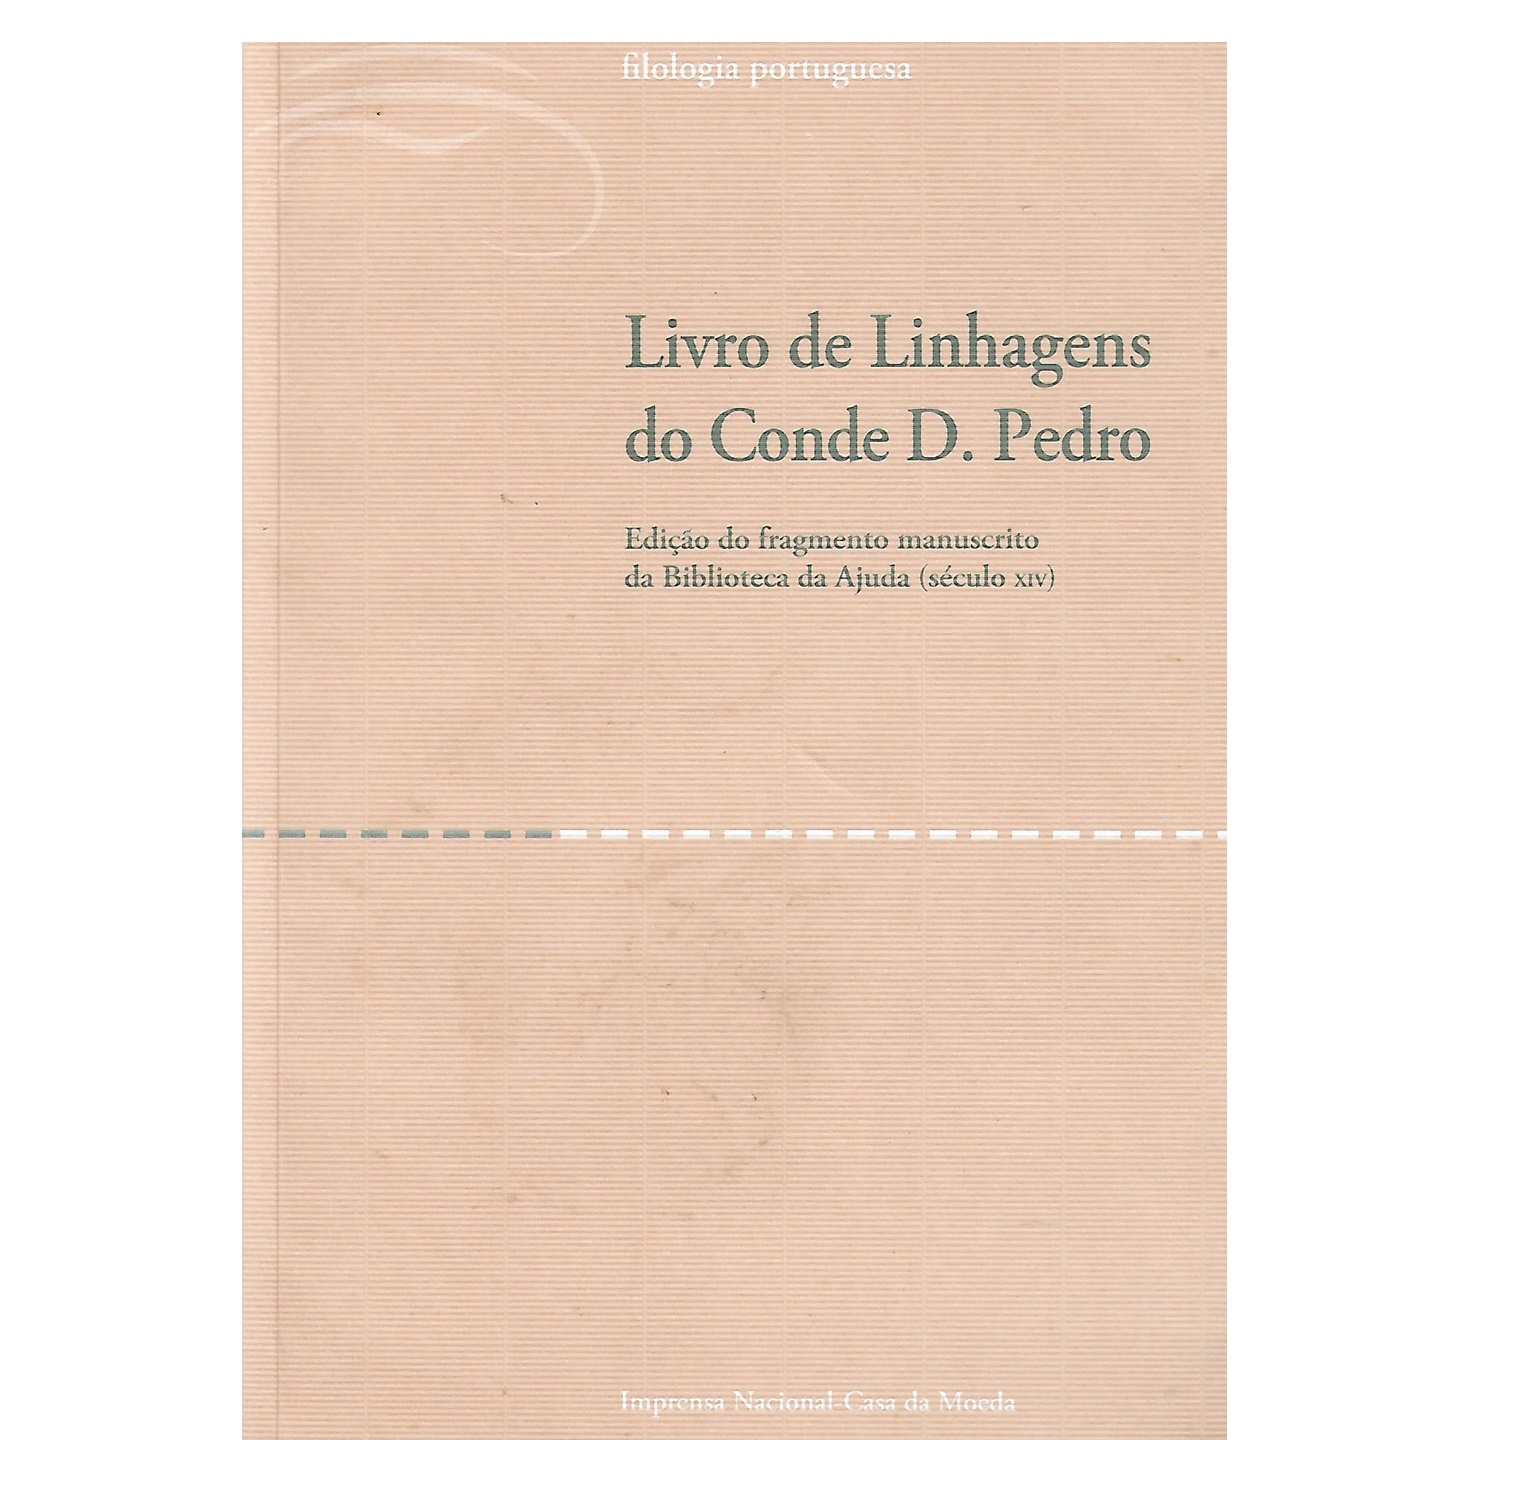 LIVRO DE LINHAGENS DO CONDE D. PEDRO